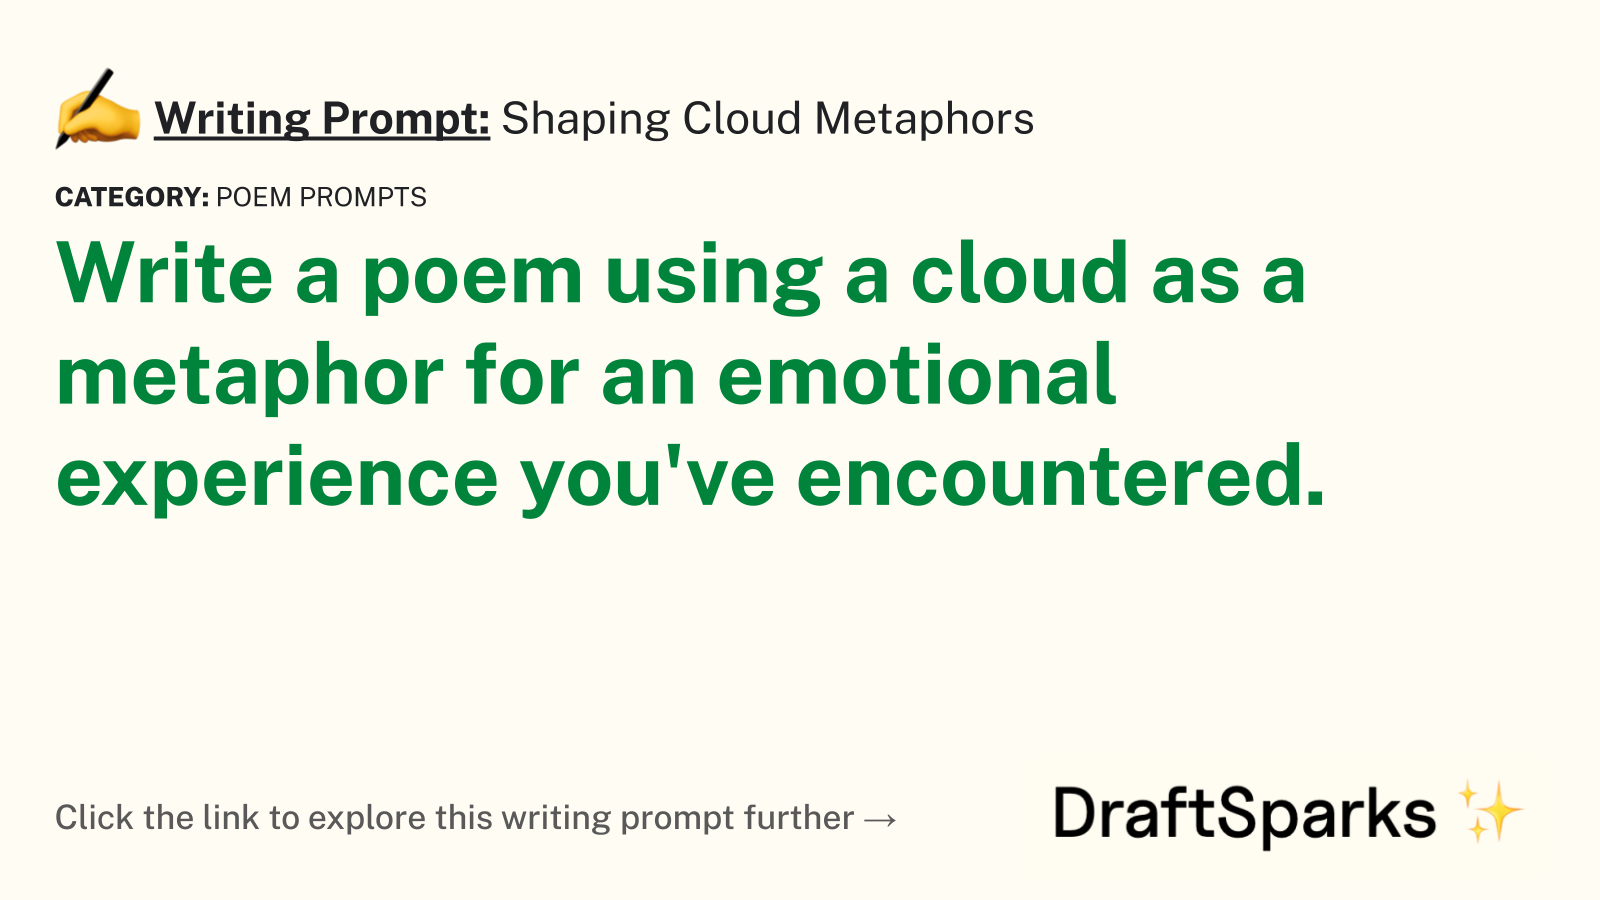 Shaping Cloud Metaphors